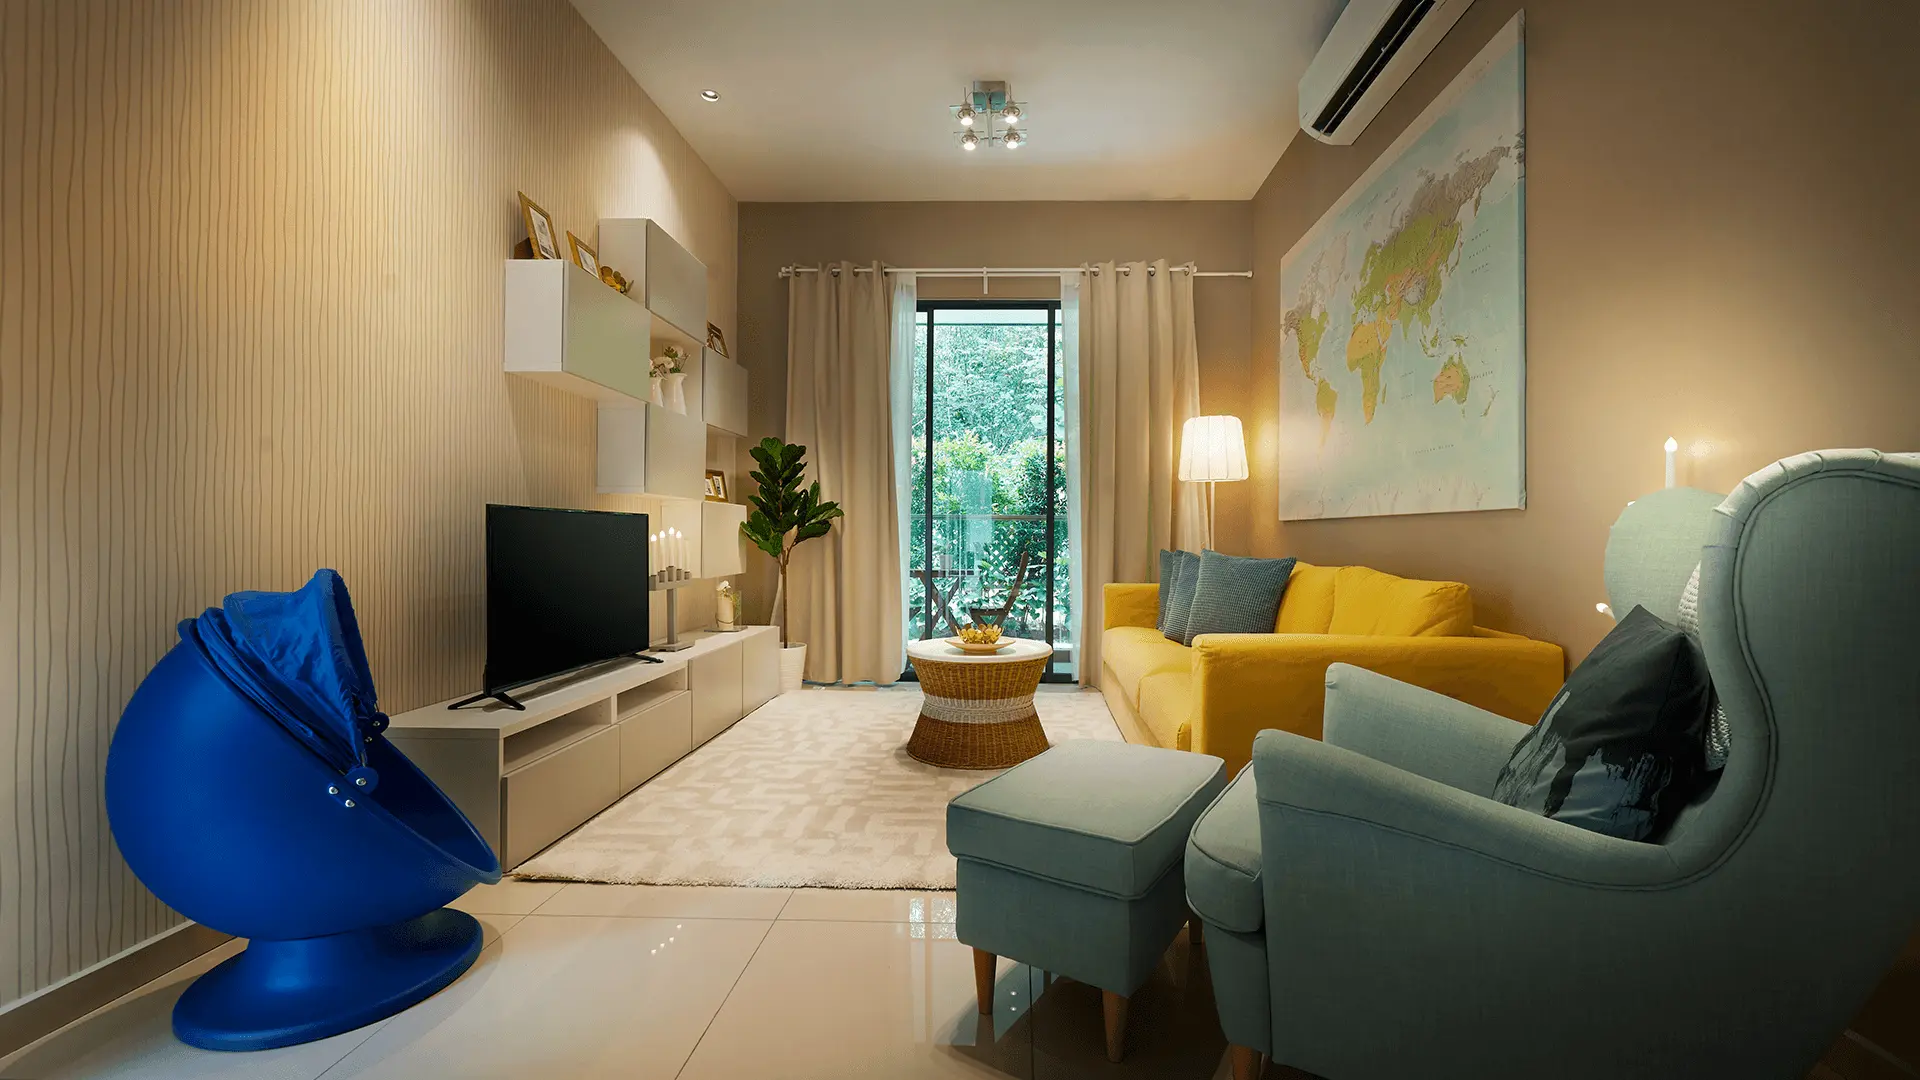 Cần tham khảo thiết kế căn hộ xem có phù hợp với gia đình sở thích cá nhân